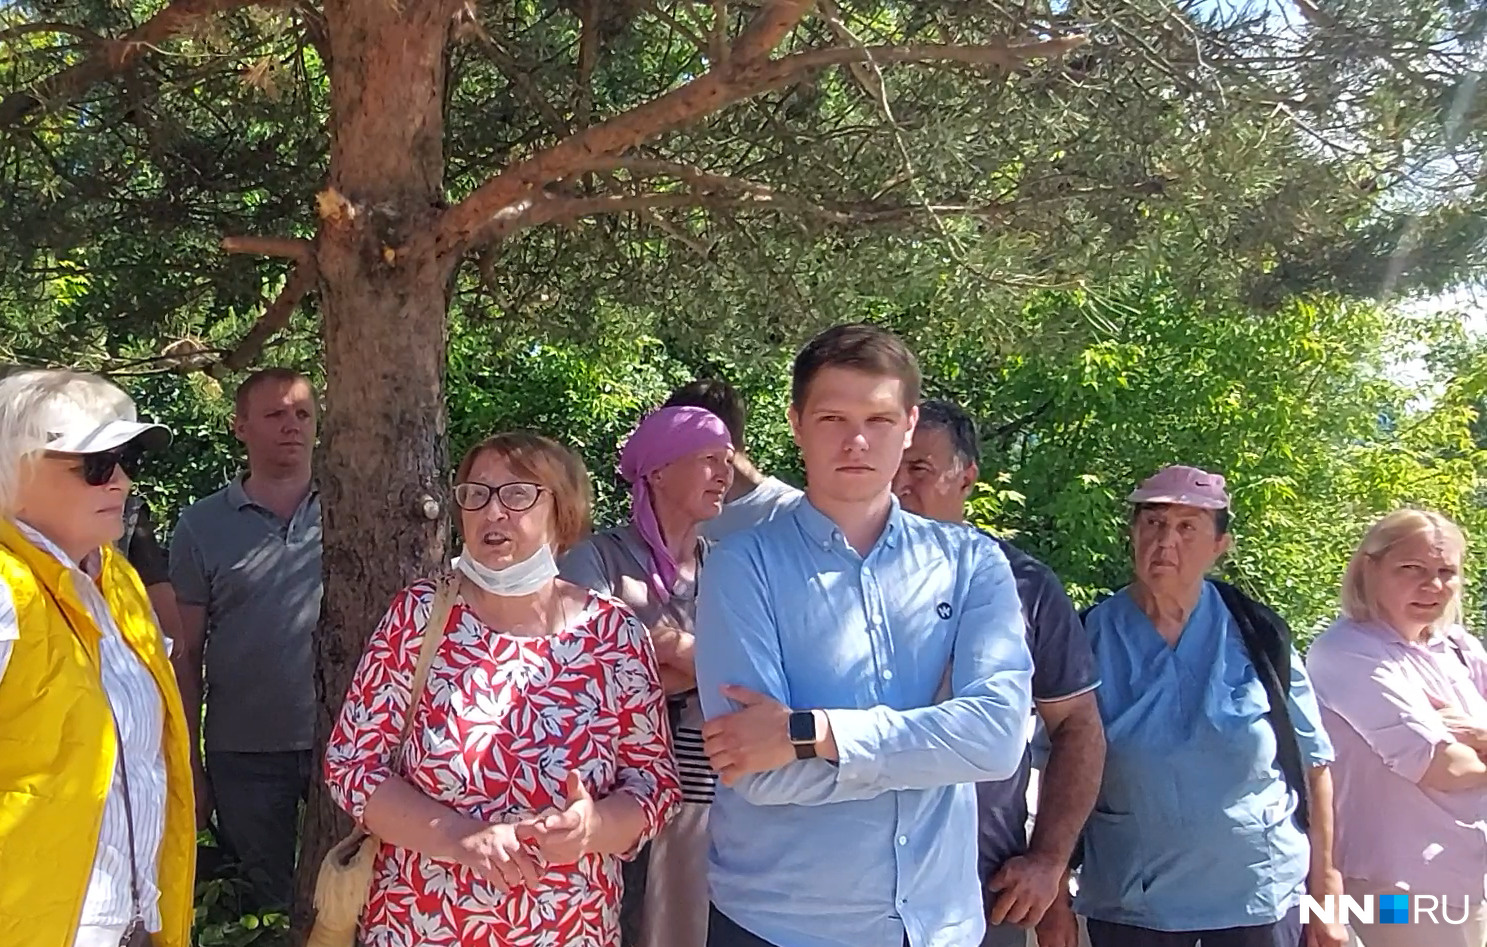 Кирилла Сытянова избили в 2018 году вместе с отцом и другими садоводами, которые хотели переизбрать председателя